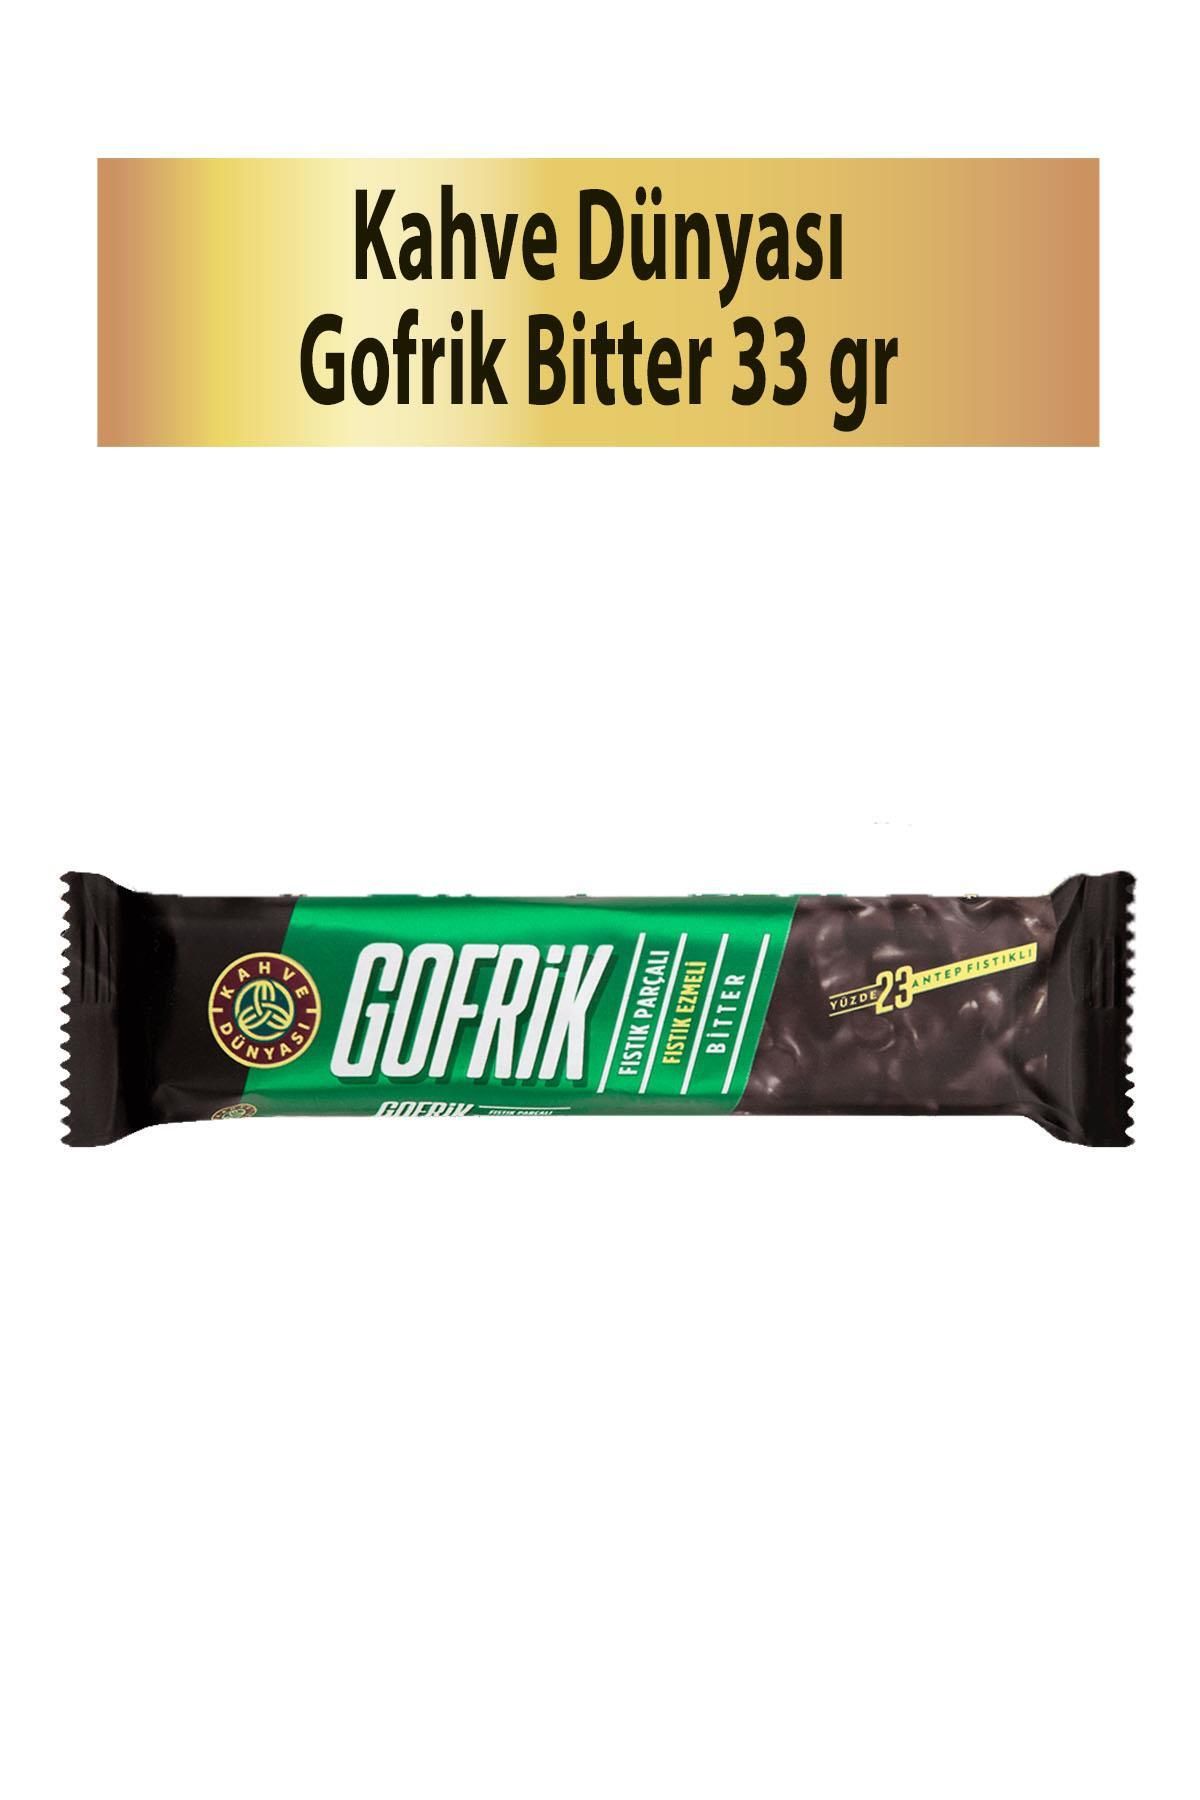 Kahve Dünyası Gofrik Bitter Çikolata 33 gr